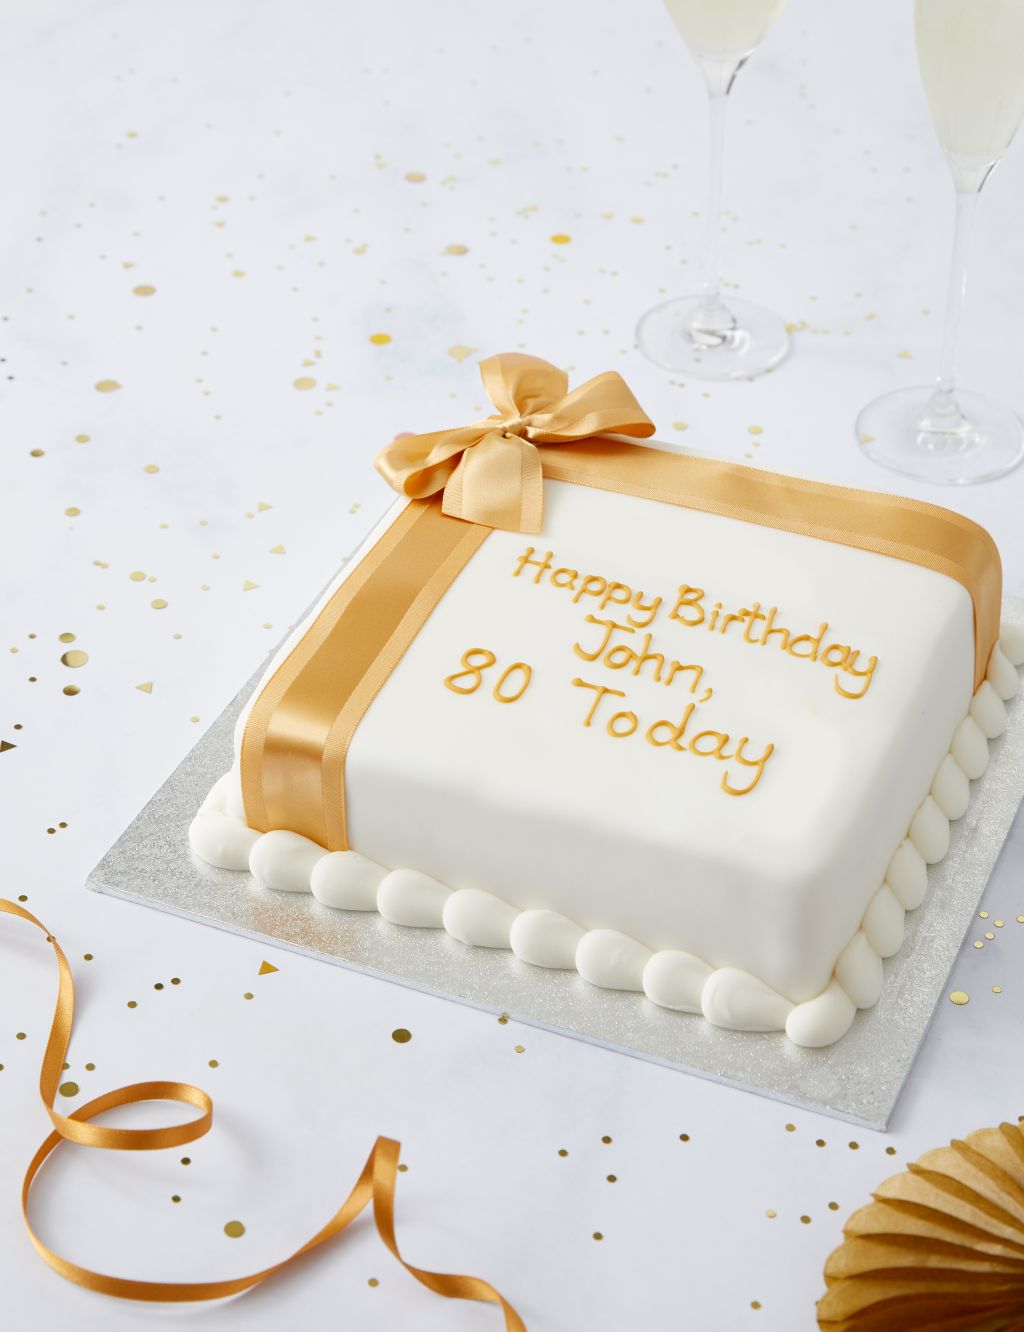 Personalised Celebration Sponge Cake with Gold Ribbon (Serves 30) 2 of 6